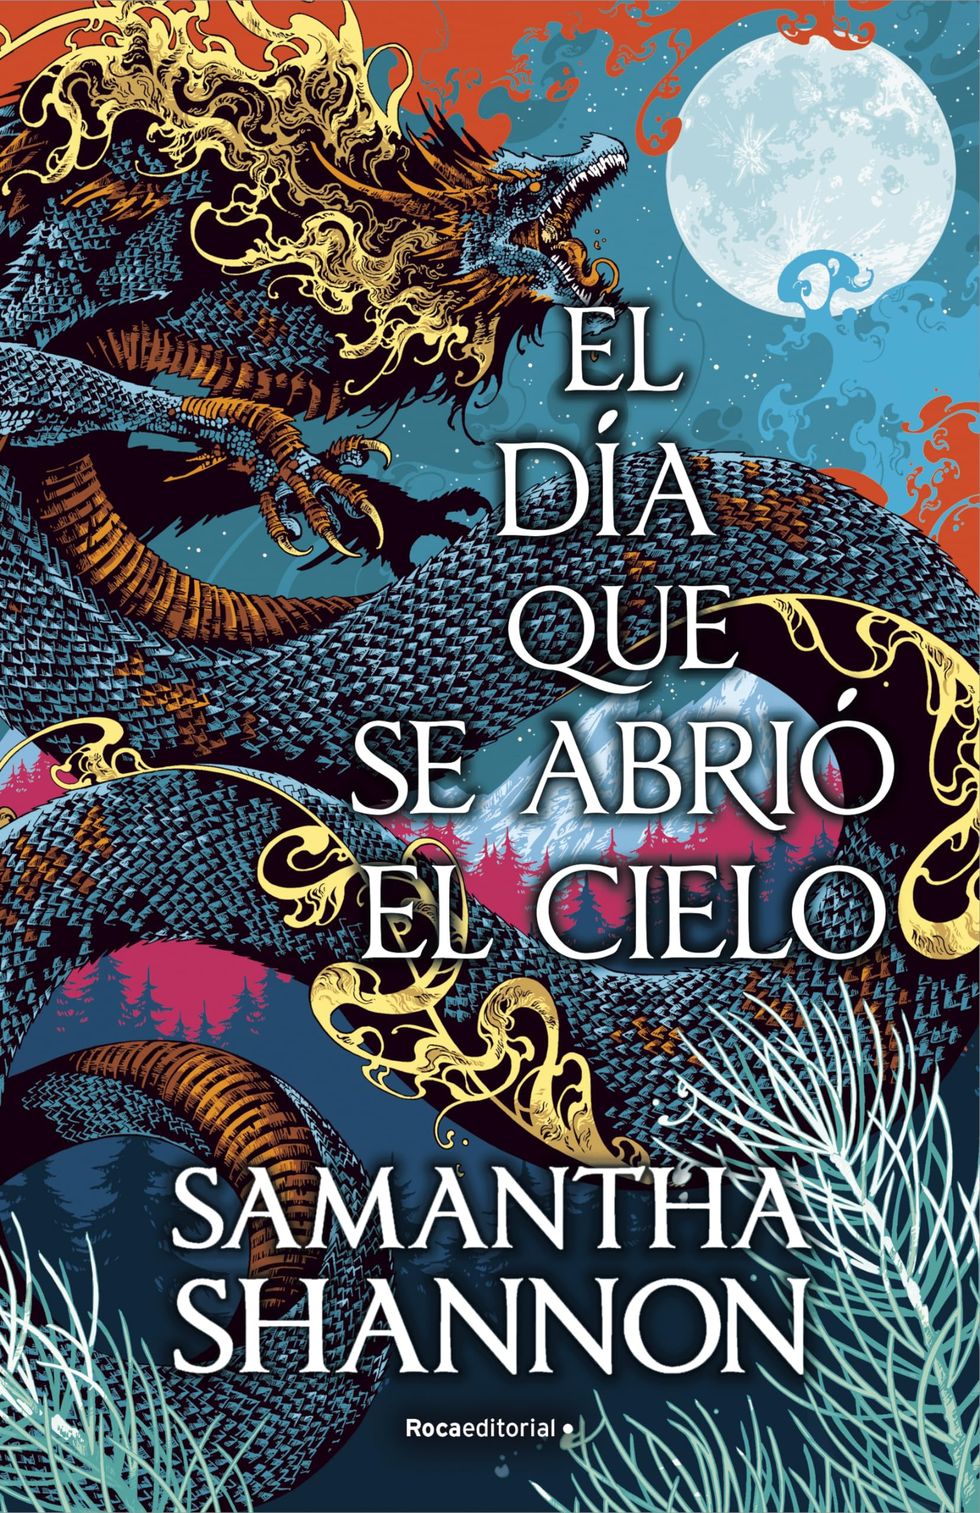 Las 100 mejores sagas y novelas de fantasía (Spanish Edition)